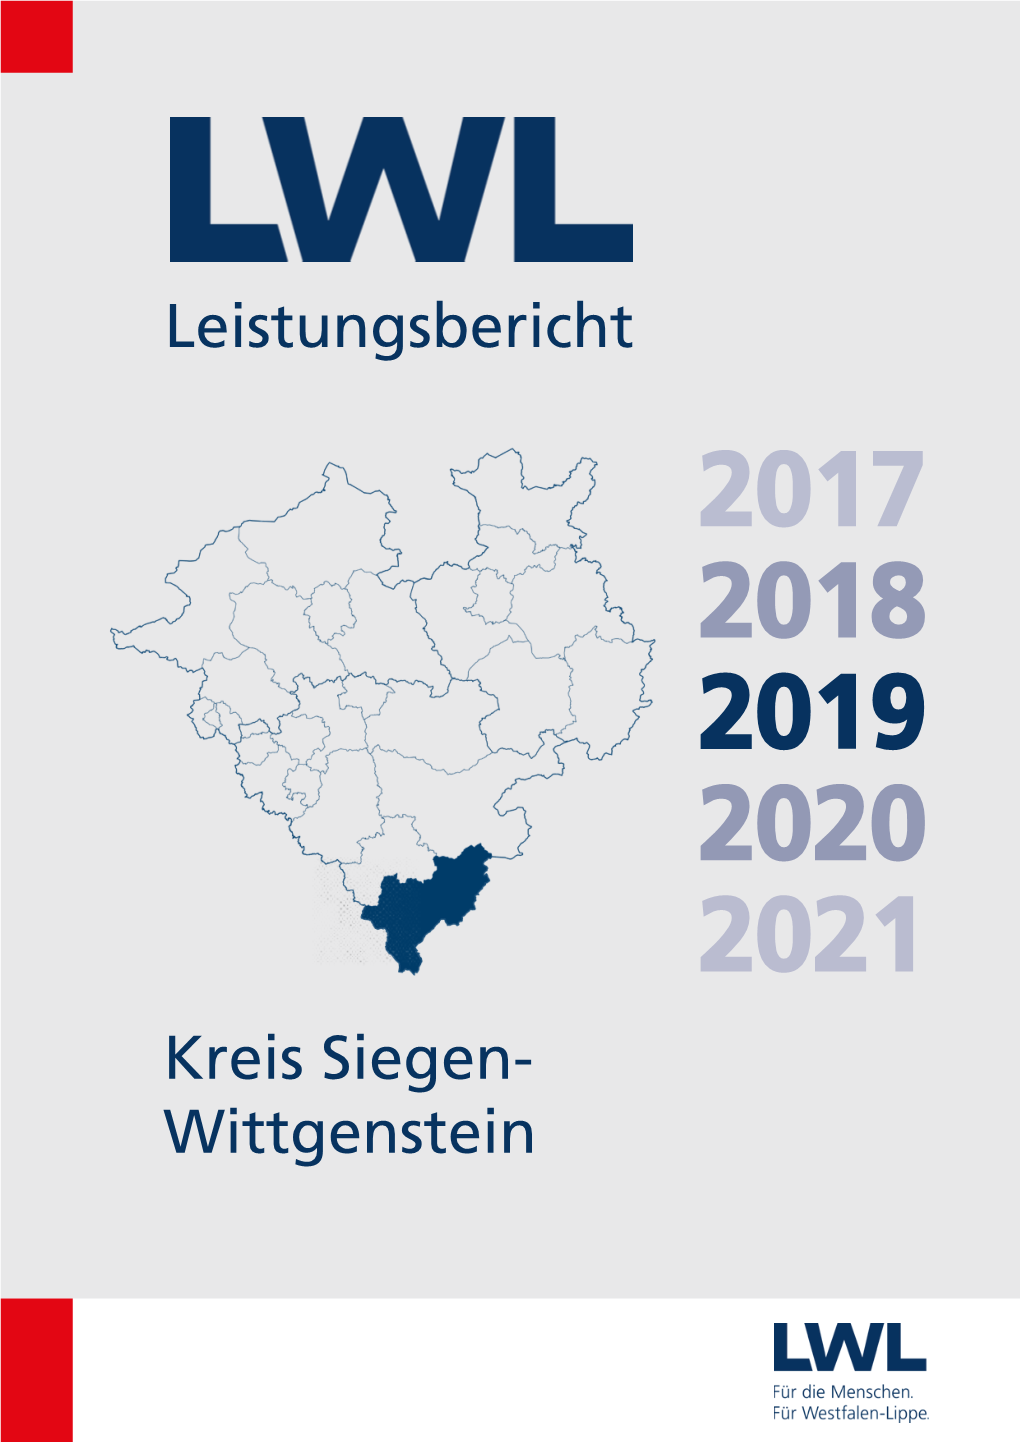 Kreis Siegen-Wittgenstein